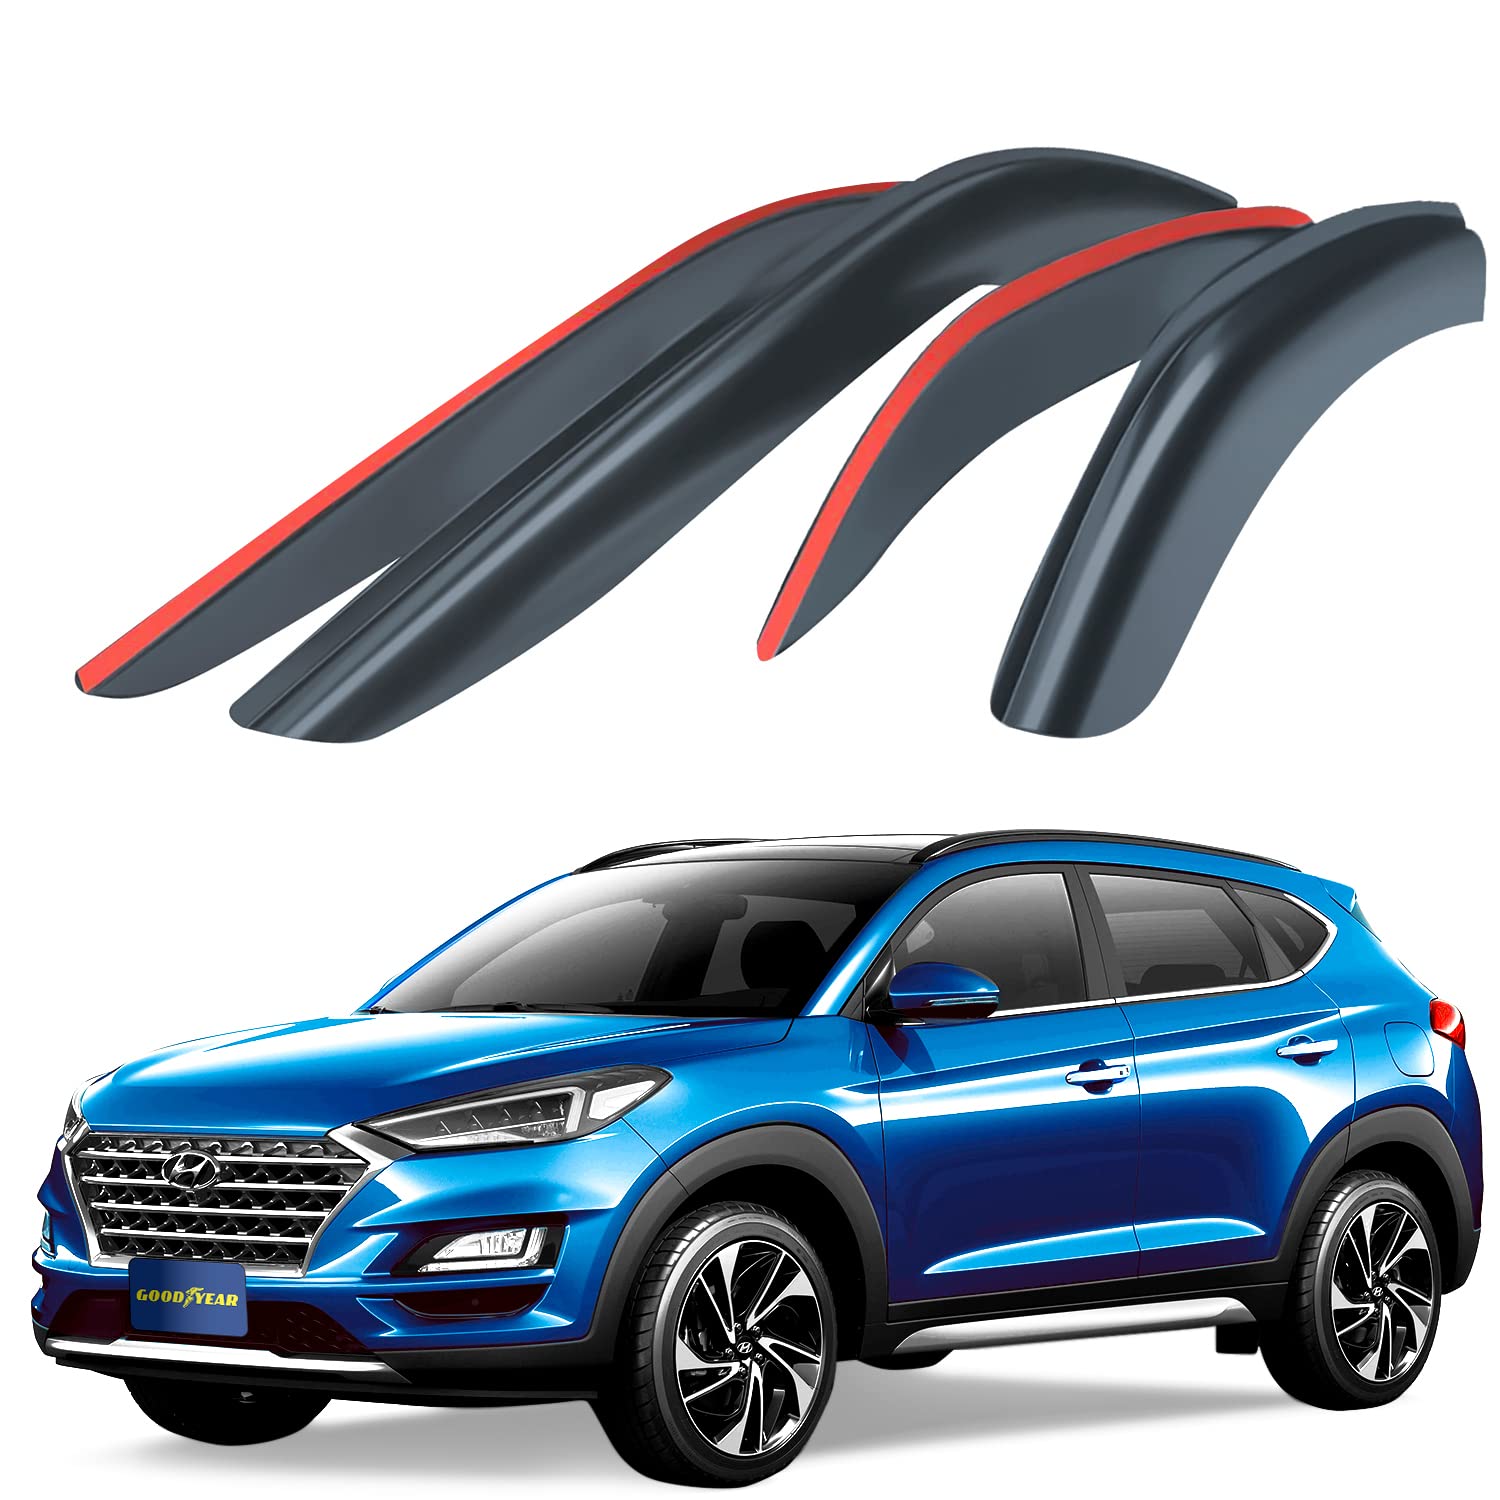 Goodyear Windabweiser für/kompatible mit Hyundai Tucson 2015-2020 Autofenster Regenschutz, Regenabweiser, Anklebbare Deflektoren, 4 Stück,Rauchfarben von Goodyear